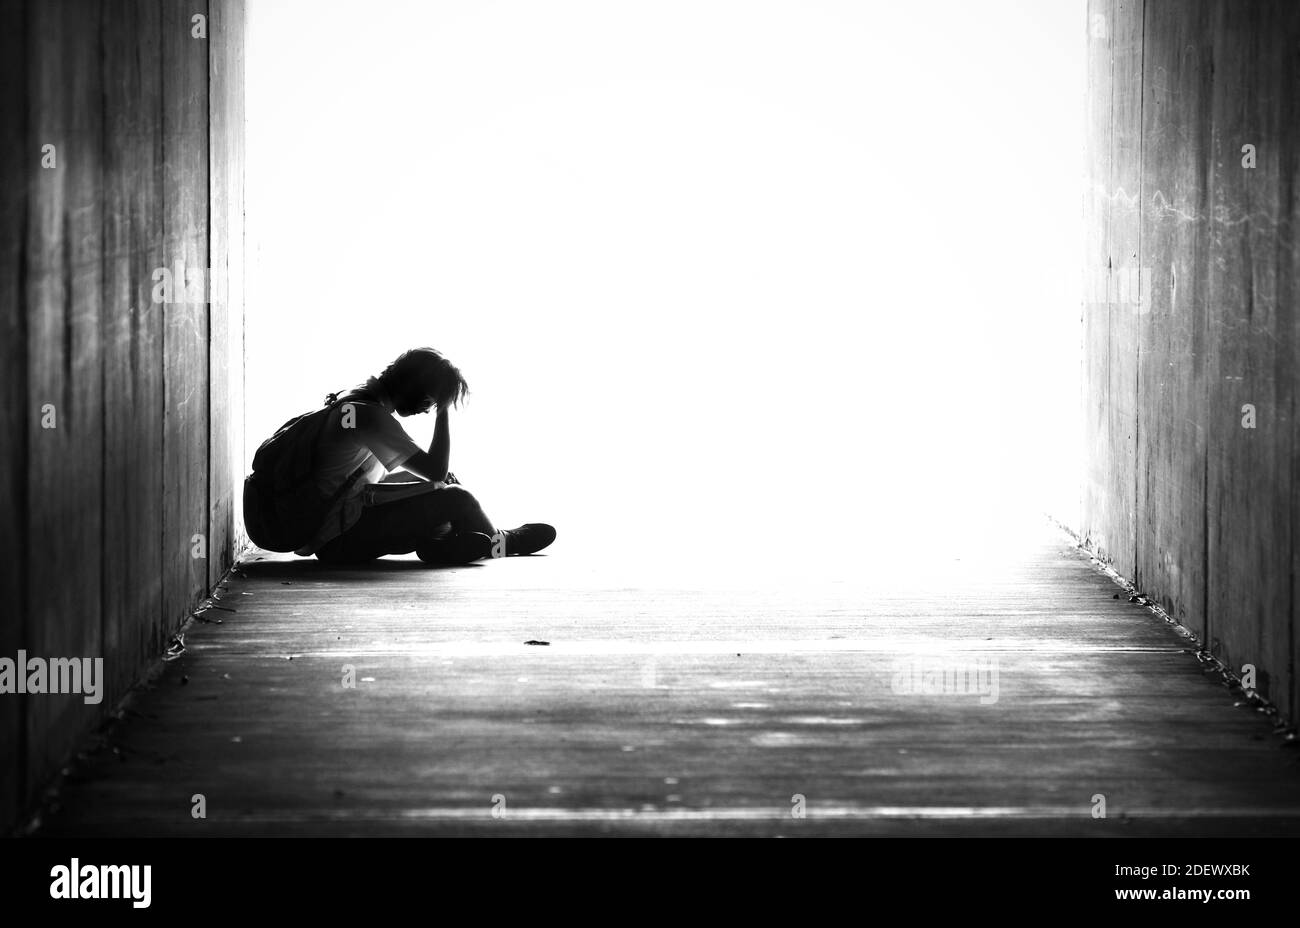 Silhouette eines jungen Mannes, der allein in einem Tunnel sitzt, mit dem Kopf in den Händen. Schwarz-weißes Bild von Schulkind mit Tasche auf seiner Tasche. Runter und raus Stockfoto